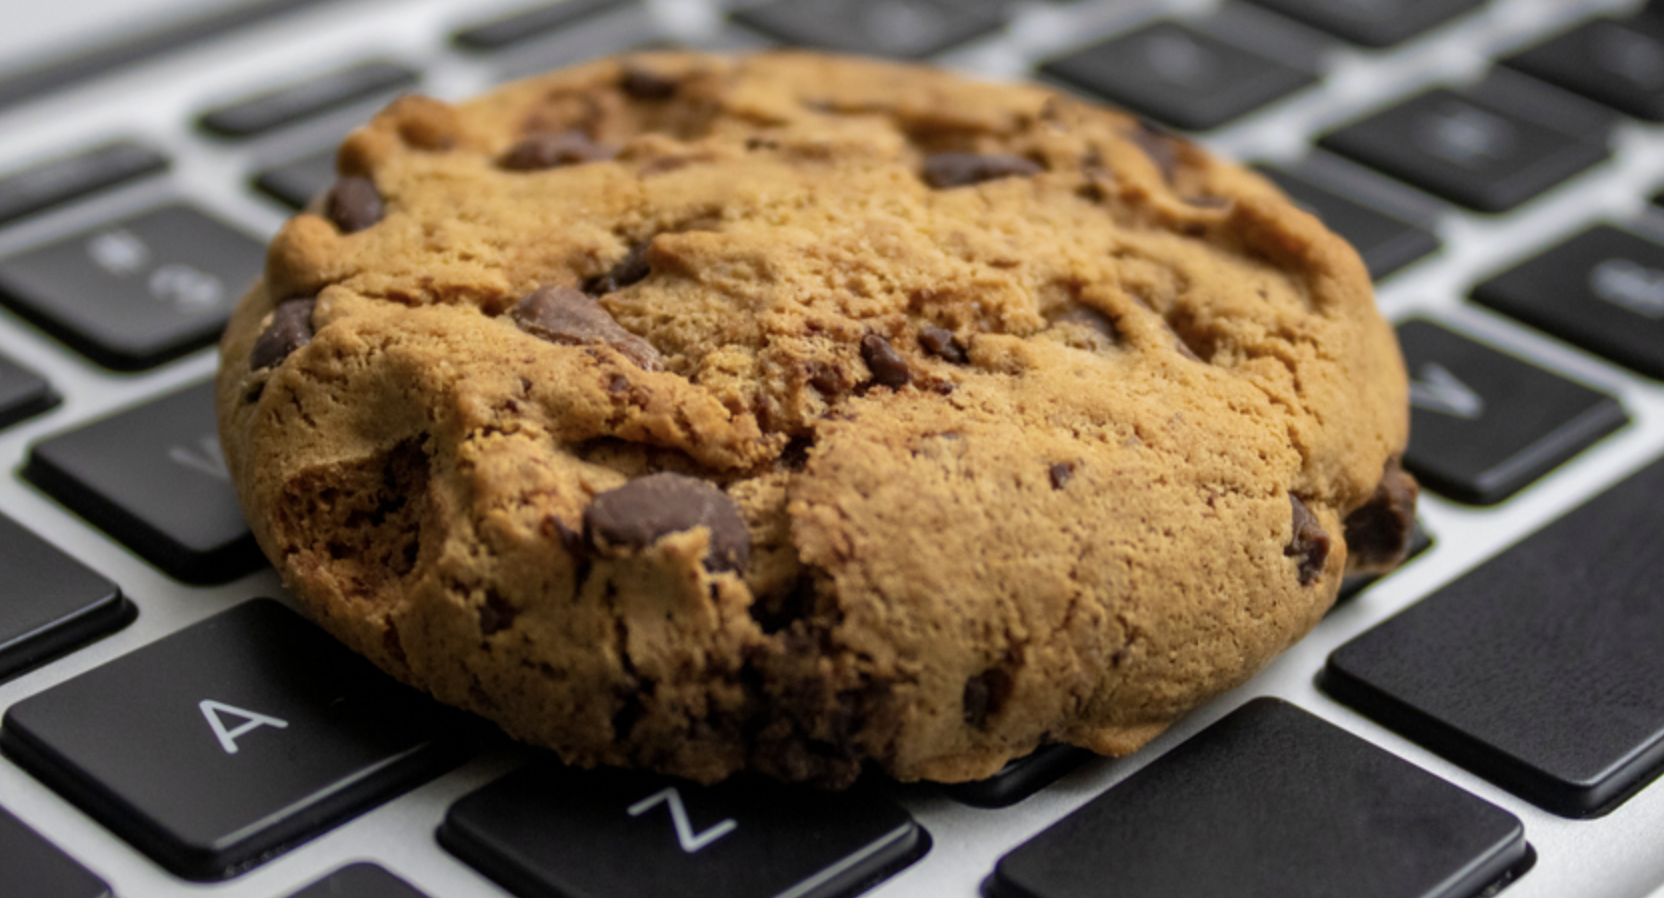 Cookies Effect. Enable cookies